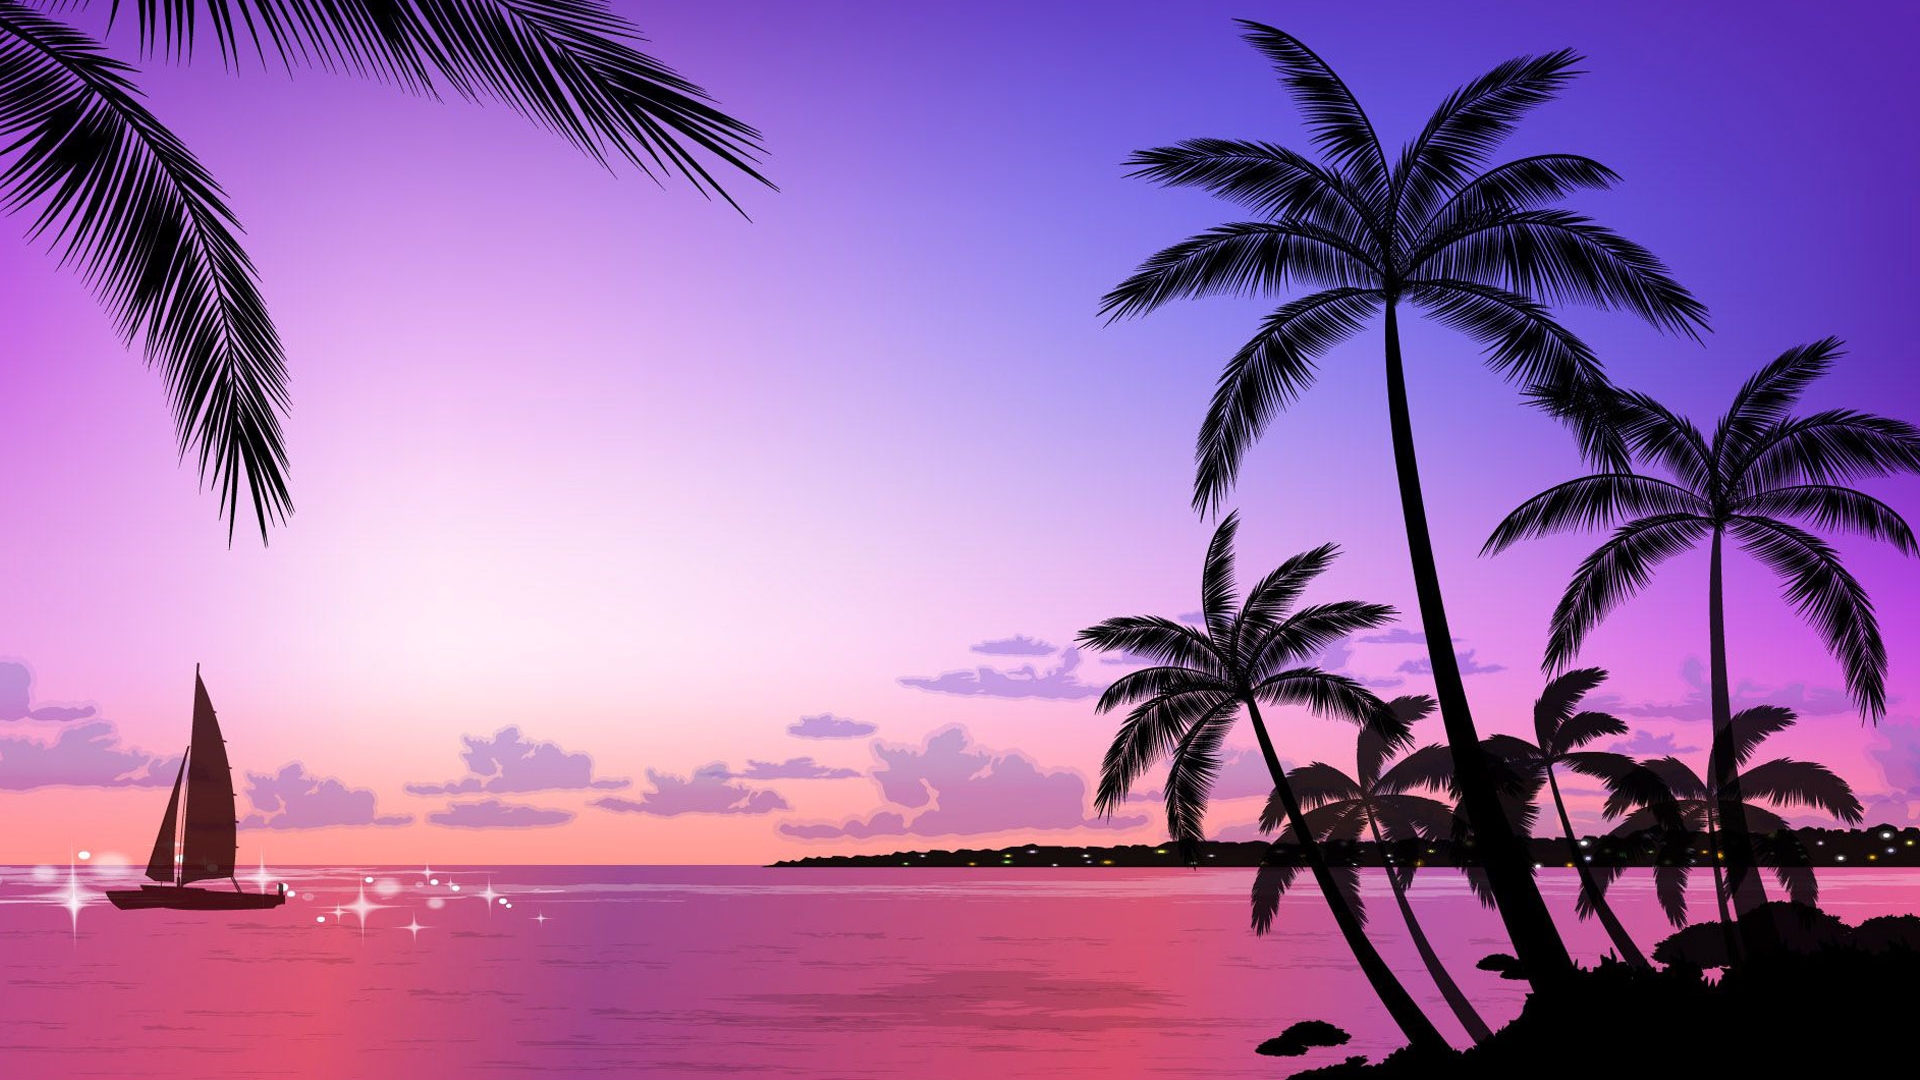 Tropical Beach Sunset Wallpaper - Tropical Sunset Beach Background , HD Wallpaper & Backgrounds